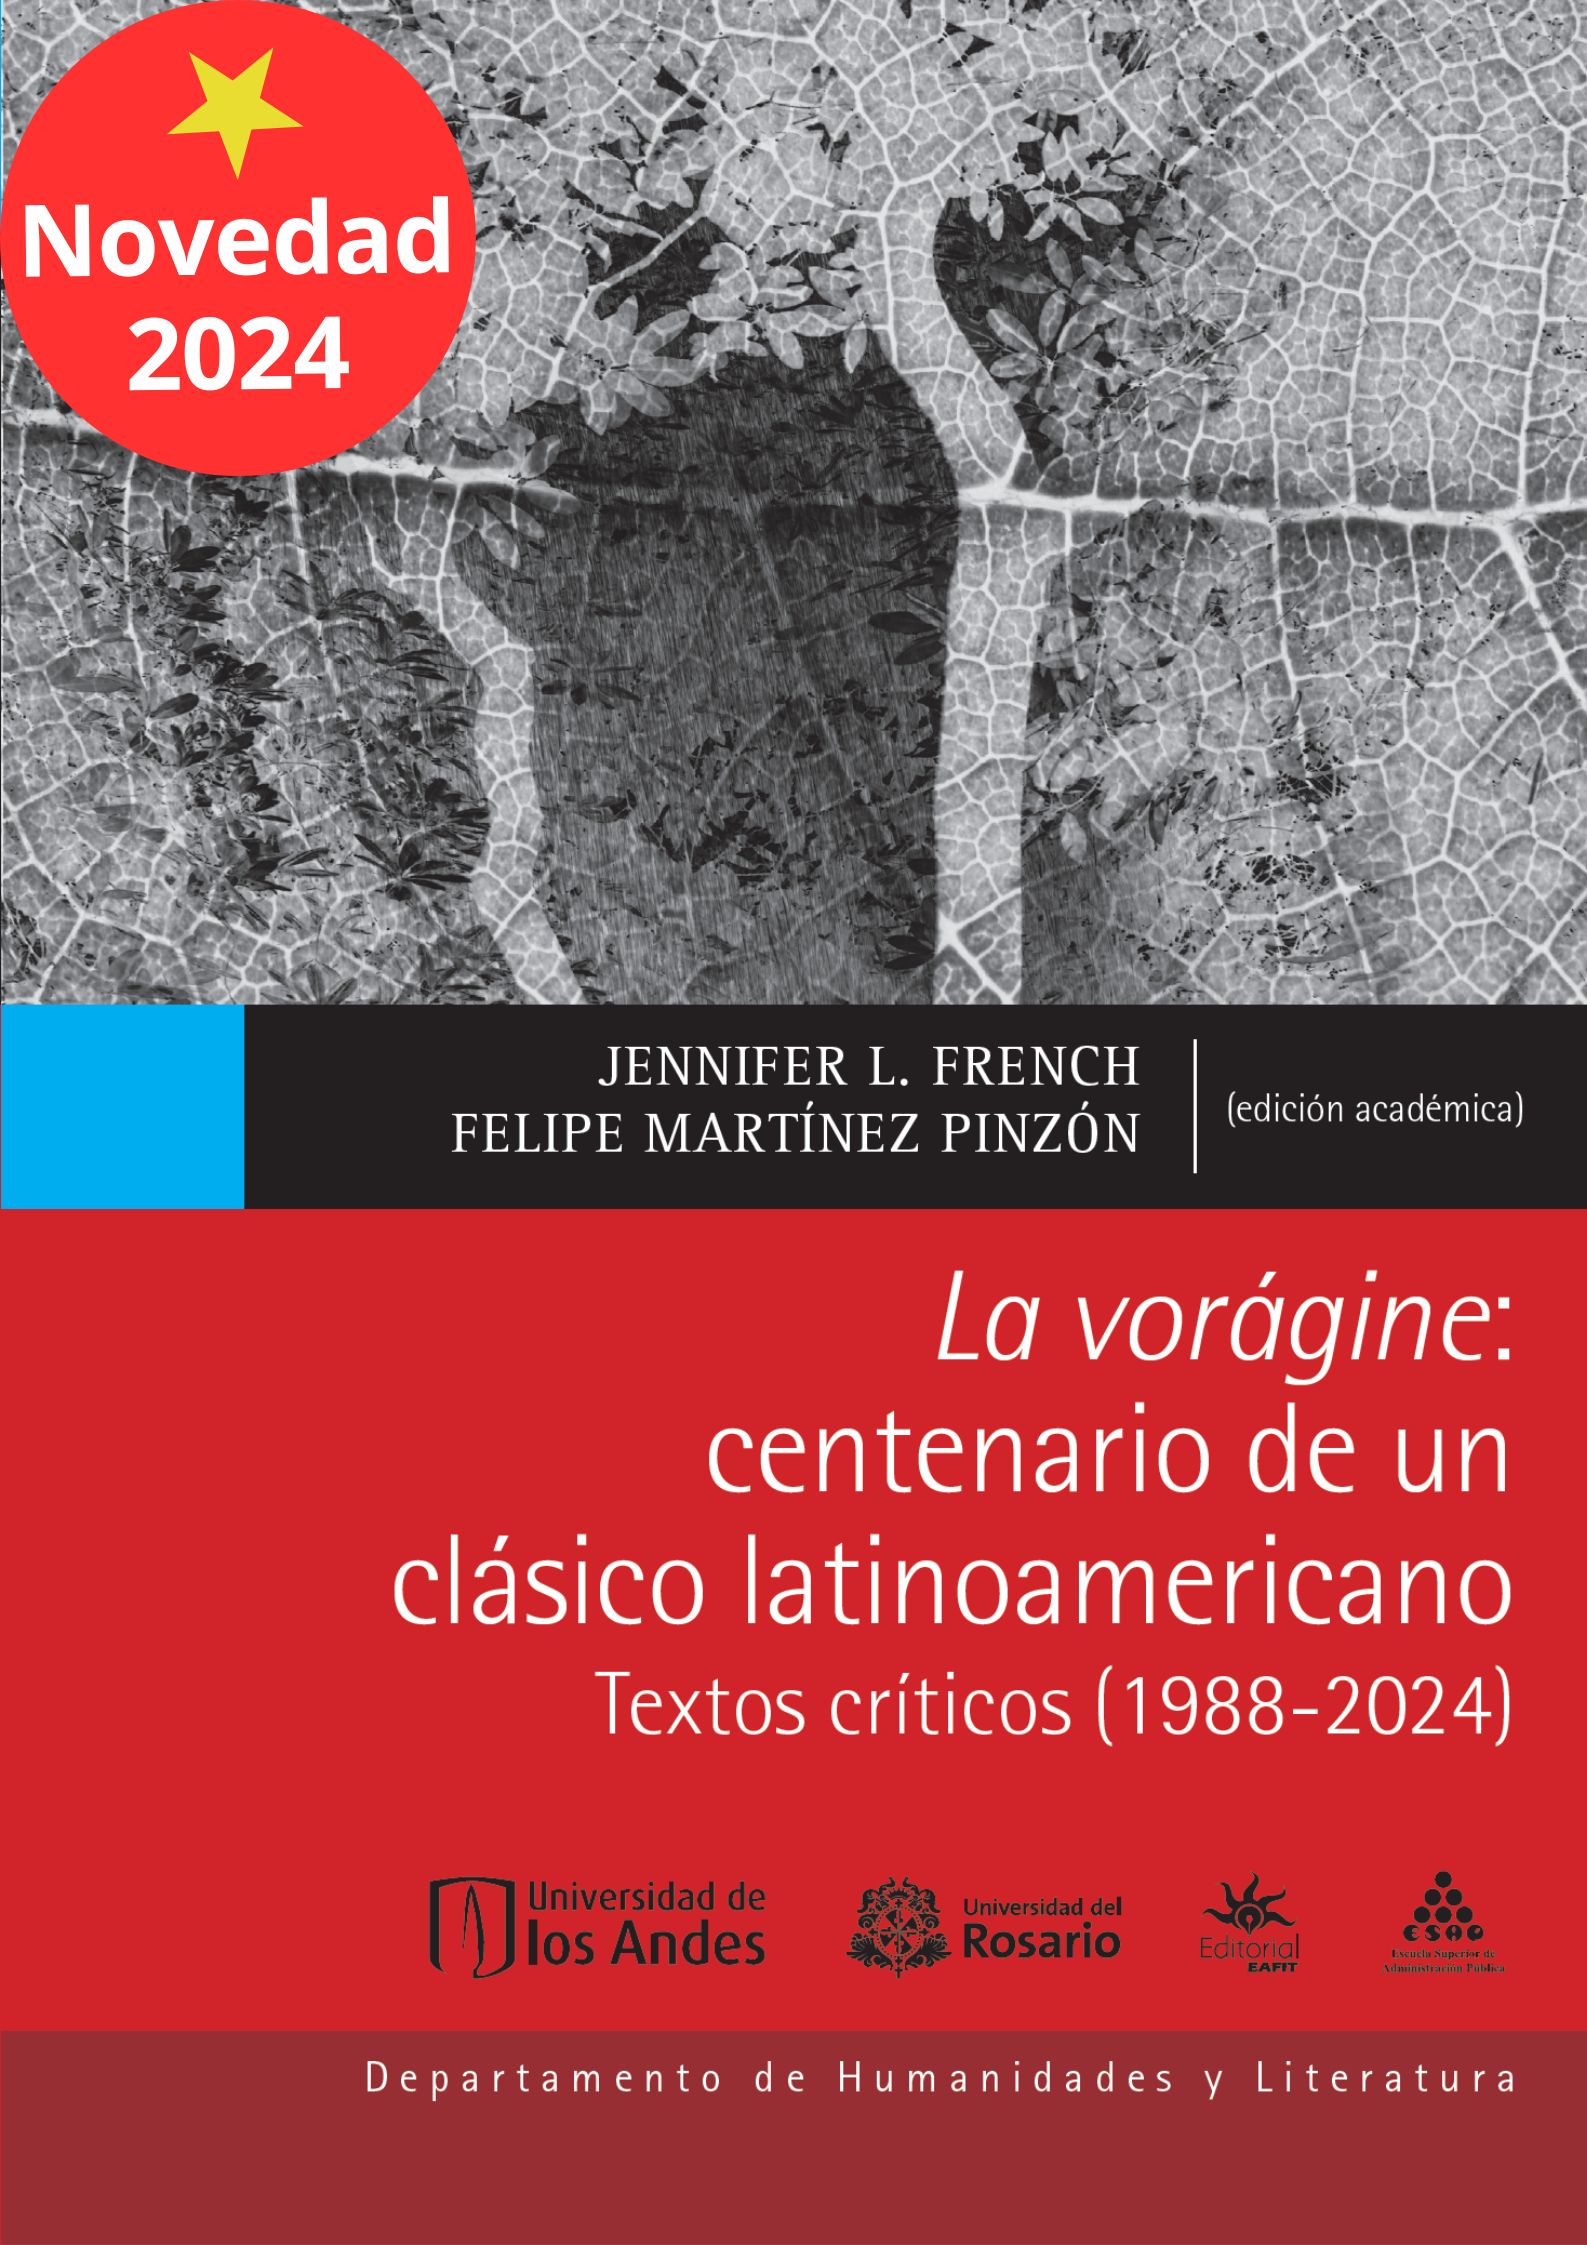 Lanzamiento del libro "La Vorágine: centenario de un clásico latinoamericano"